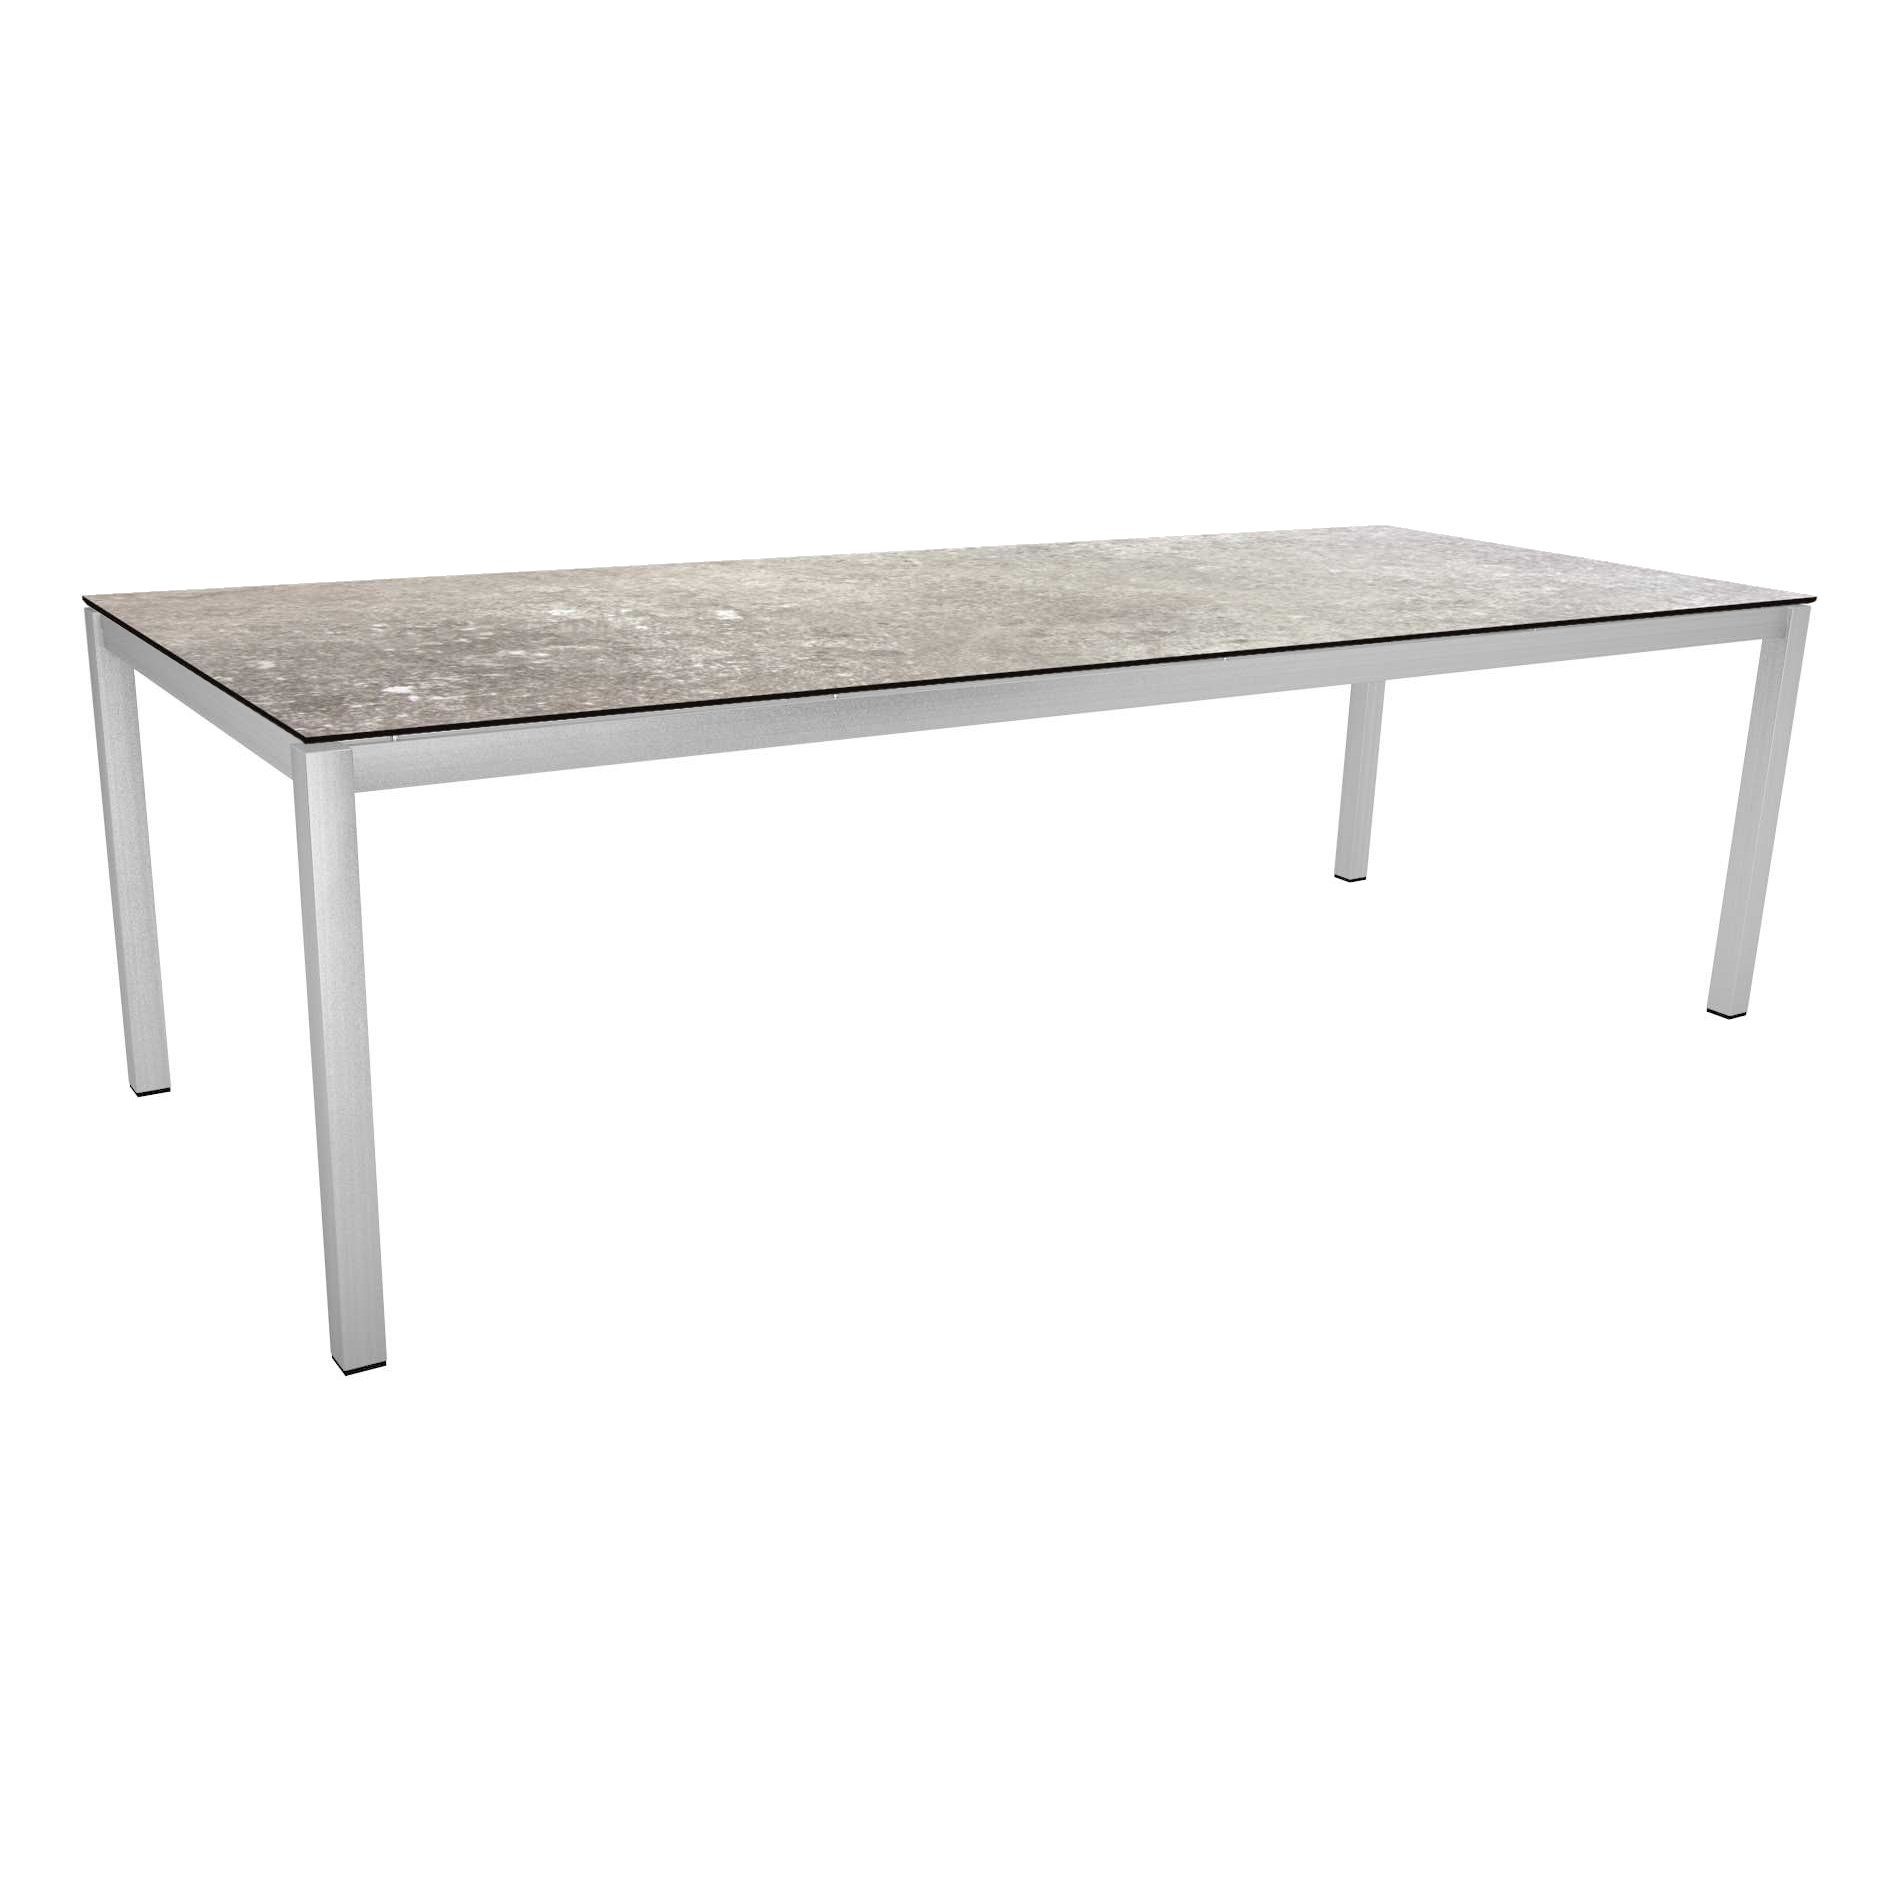 Stern Tischsystem, Gestell Edelstahl Vierkantrohr, Tischplatte HPL Vintage stone, 250x100 cm